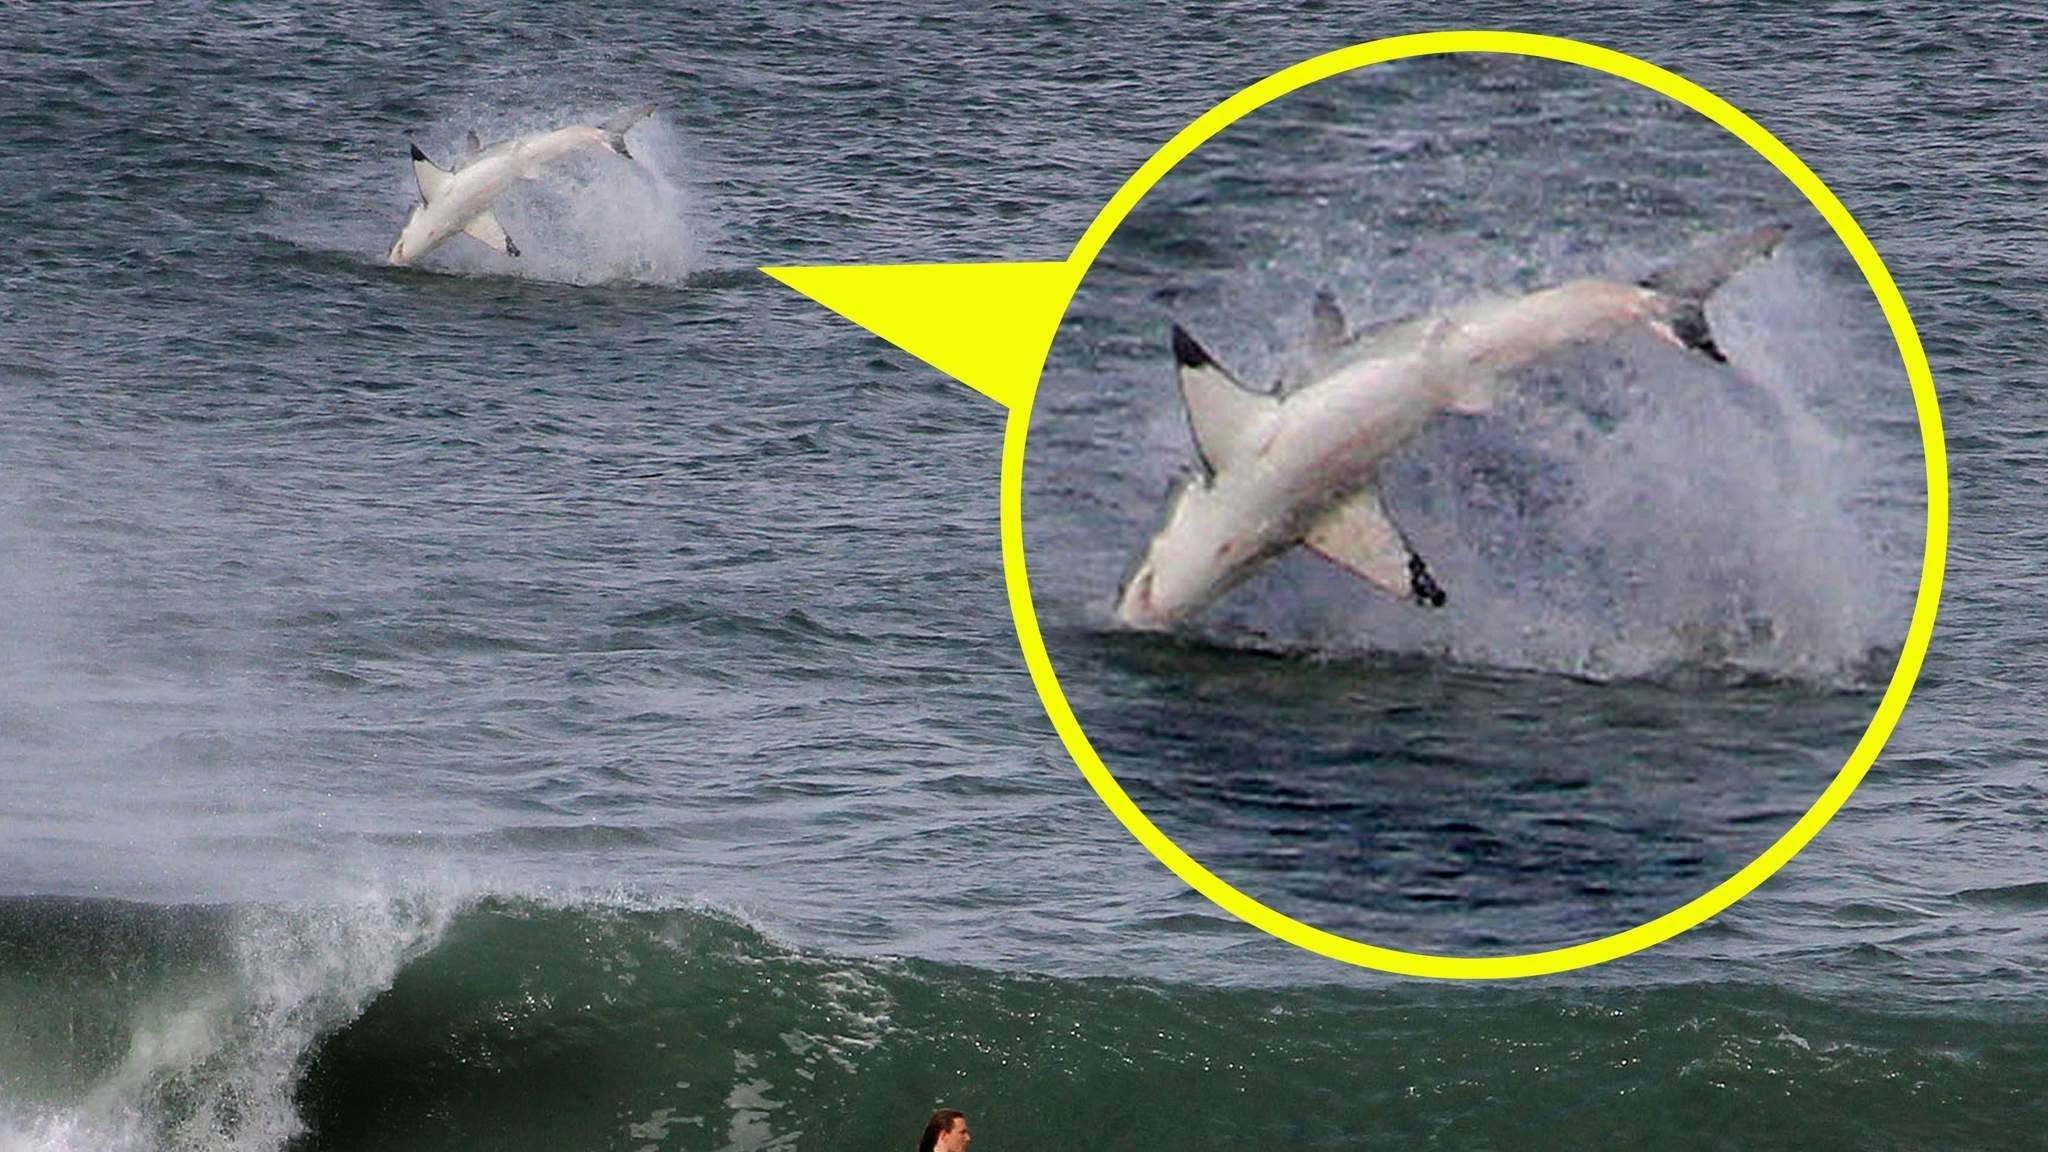 Giant Shark Causes A Splash For Surfer, World News